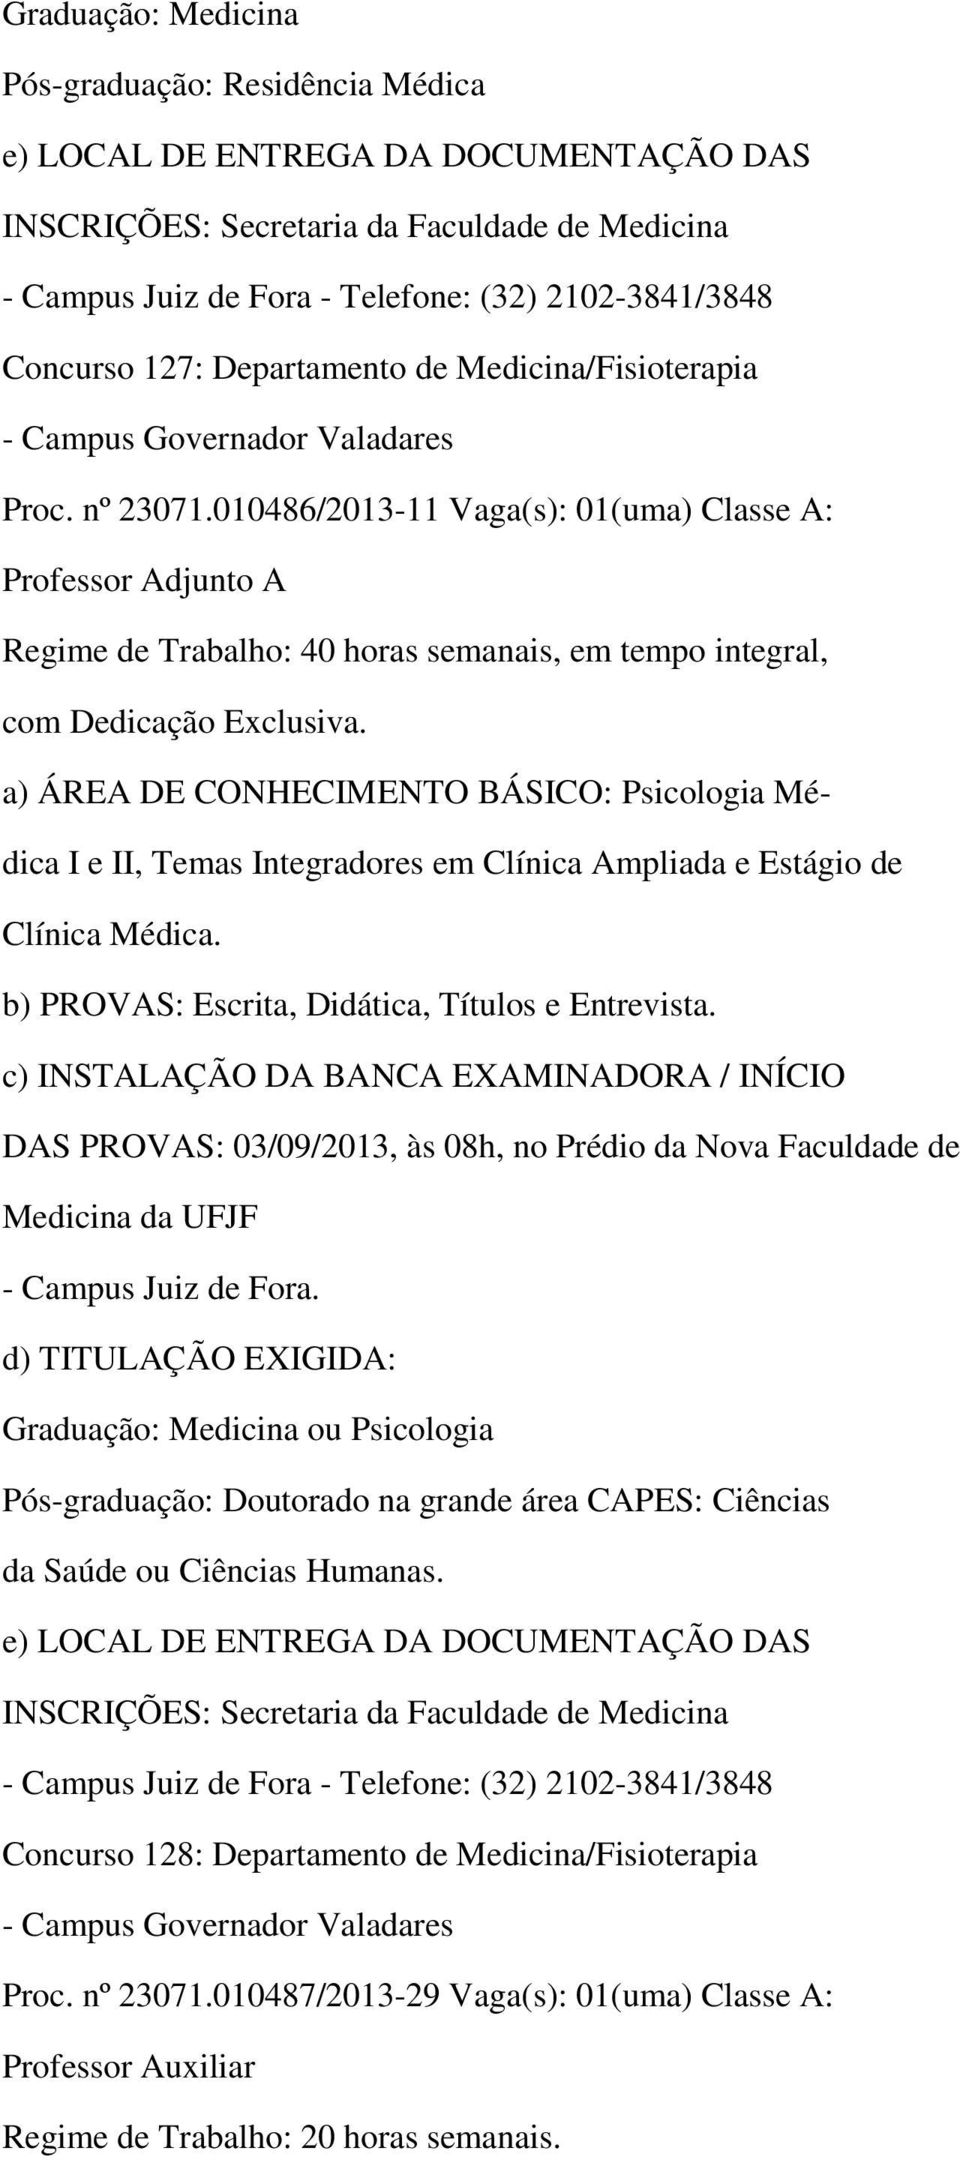 010486/2013-11 Vaga(s): 01(uma) Classe A: a) ÁREA DE CONHECIMENTO BÁSICO: Psicologia Médica I e II, Temas Integradores em Clínica Ampliada e Estágio de Clínica Médica.